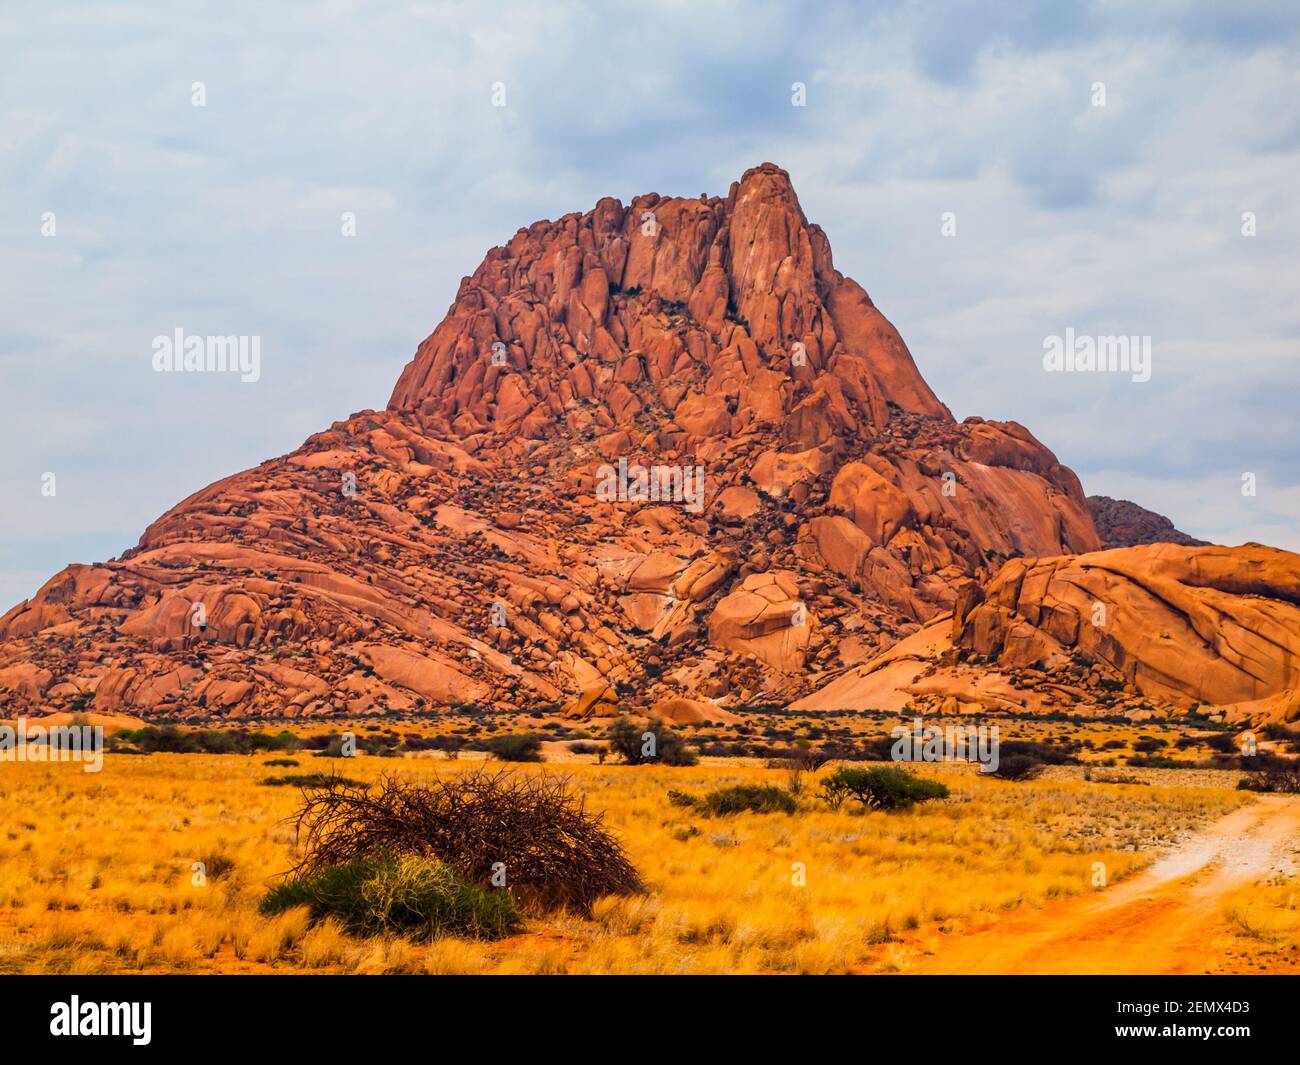 Spitskoppe mountain in Namibia Stock Photo